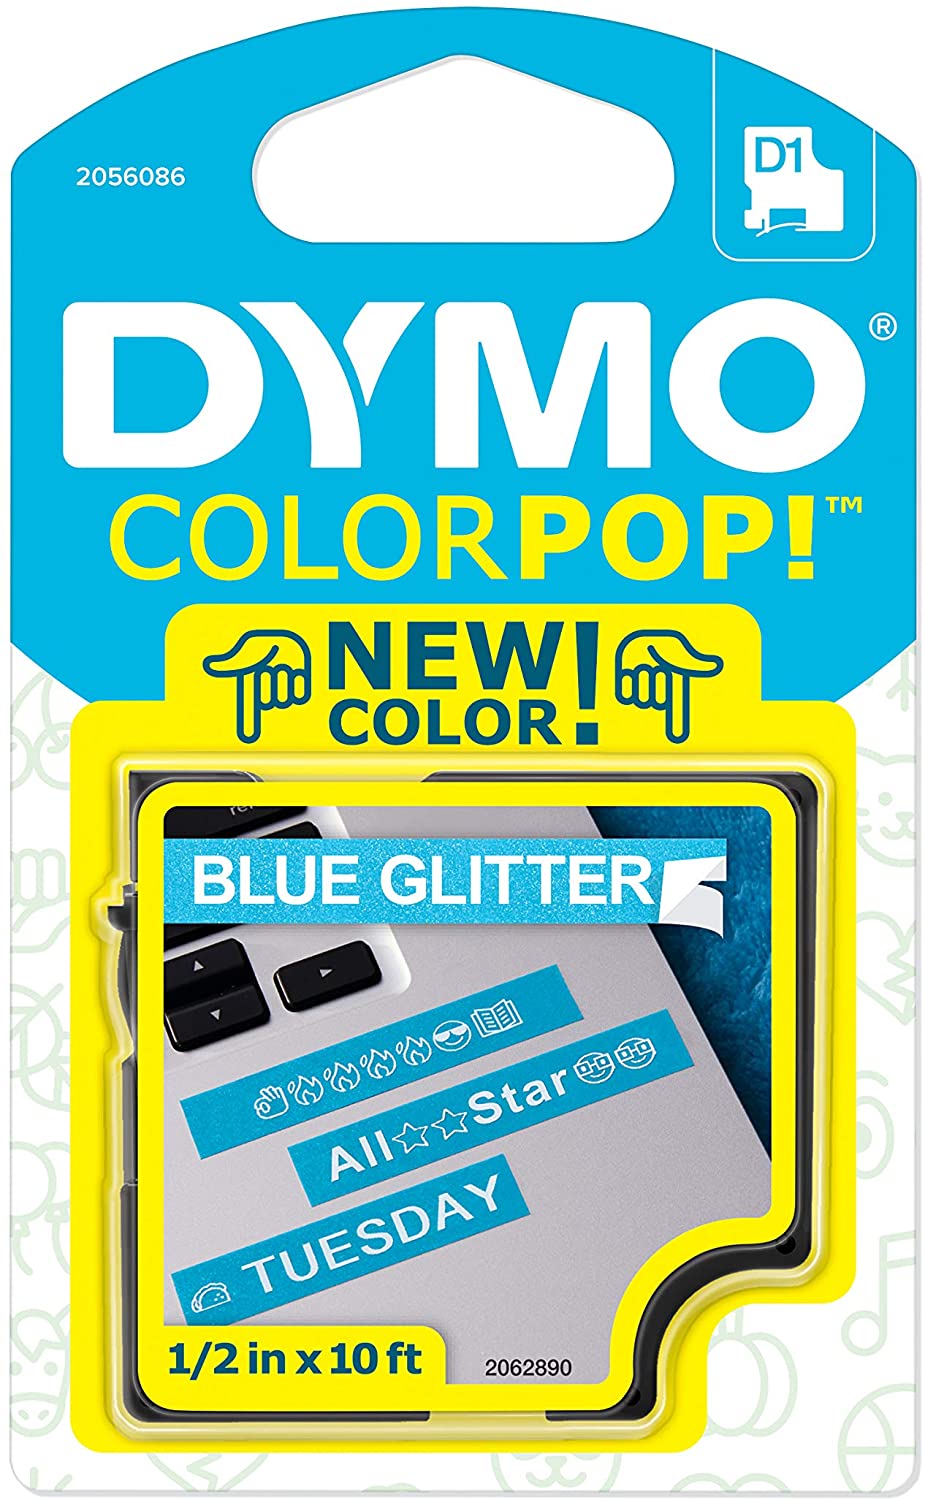 Fita Gliterizada para Rotulador LM/Color Pop - DYMO - 12mm x 3m Branco e Azul